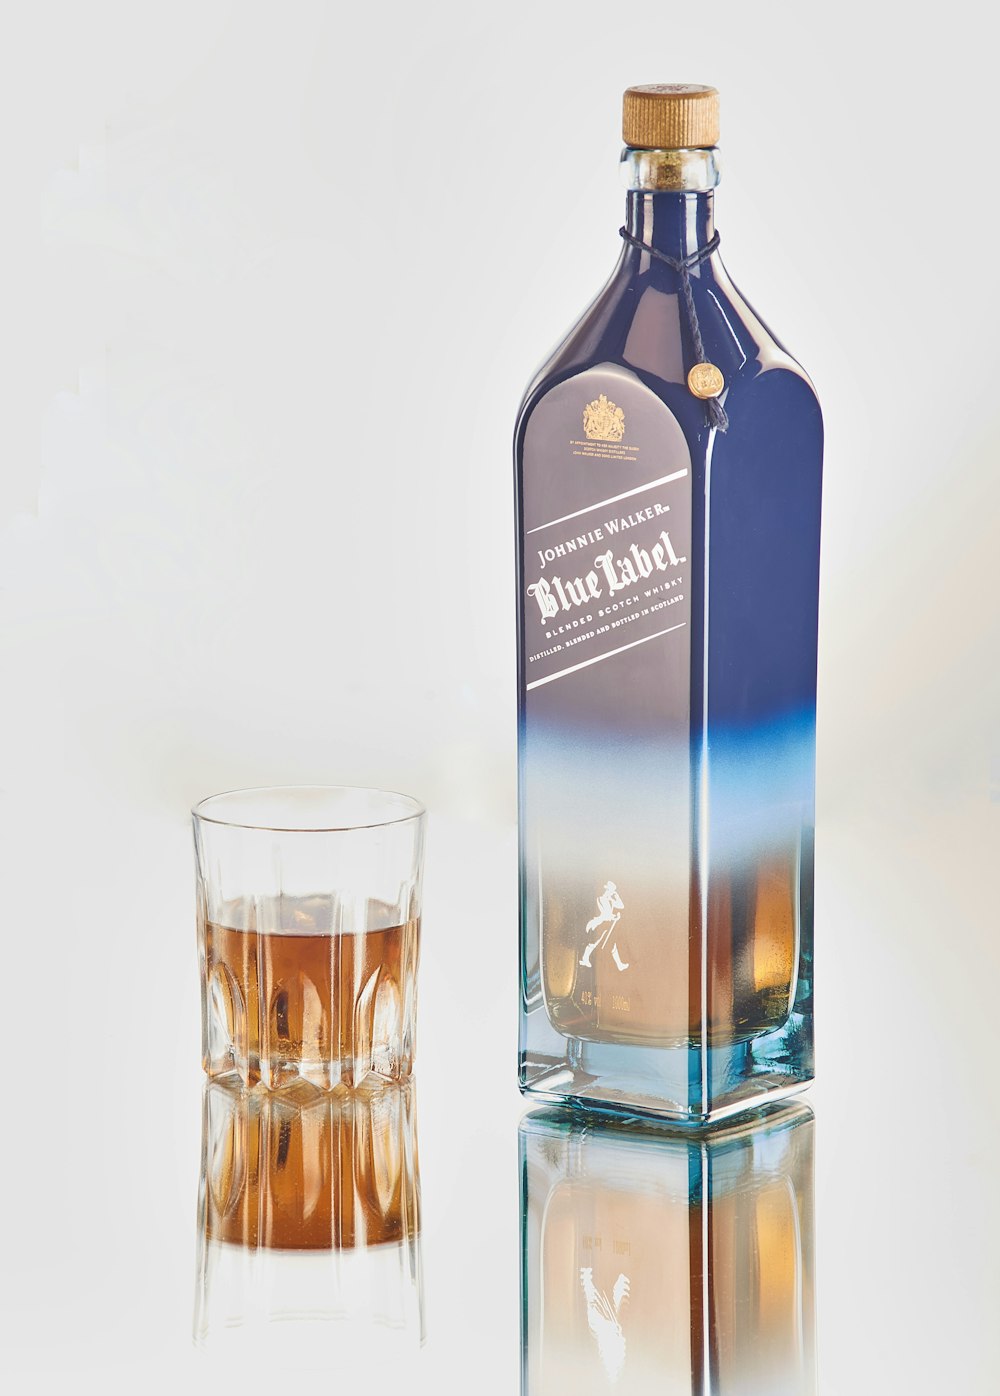 Jack Daniel's Blue Label bottle photo – Free Beverage Image on Unsplash